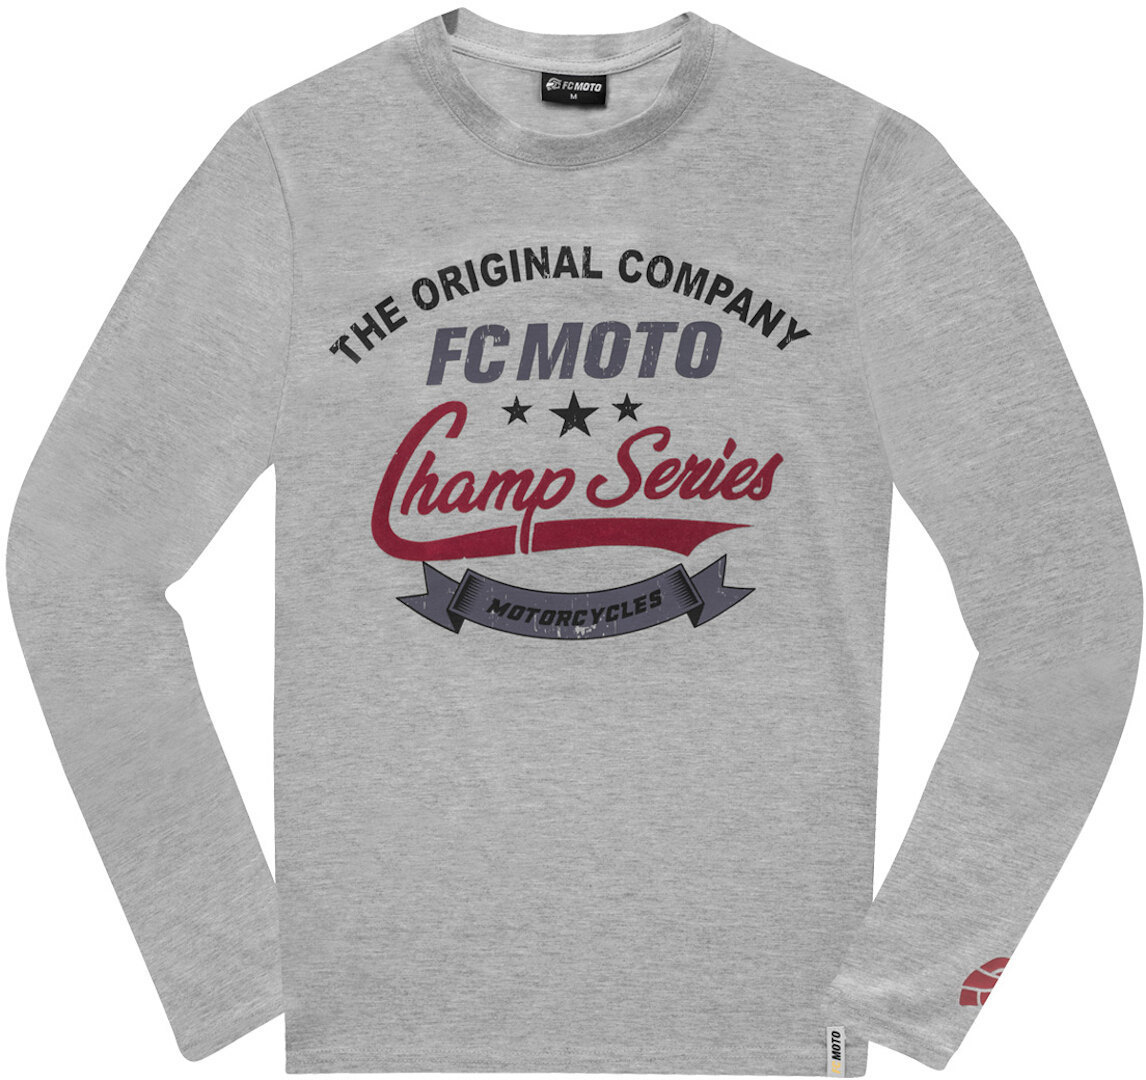 Рубашка FC-Moto Champ Series с длинными рукавами, светло-серый